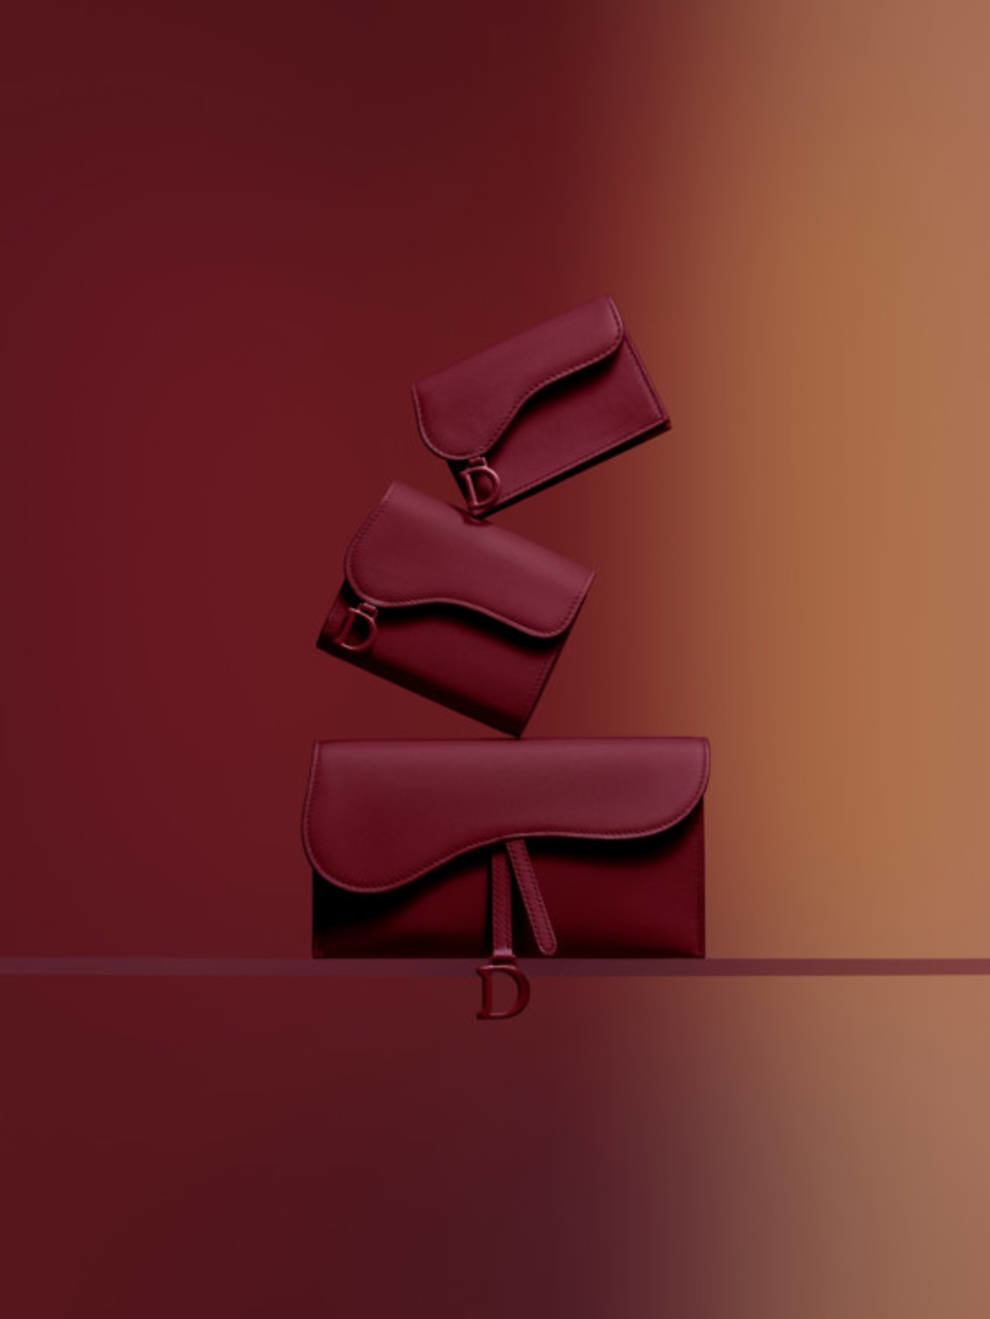 Dior презентовал коллекцию сумок и аксессуаров из матовой кожи (Фото)